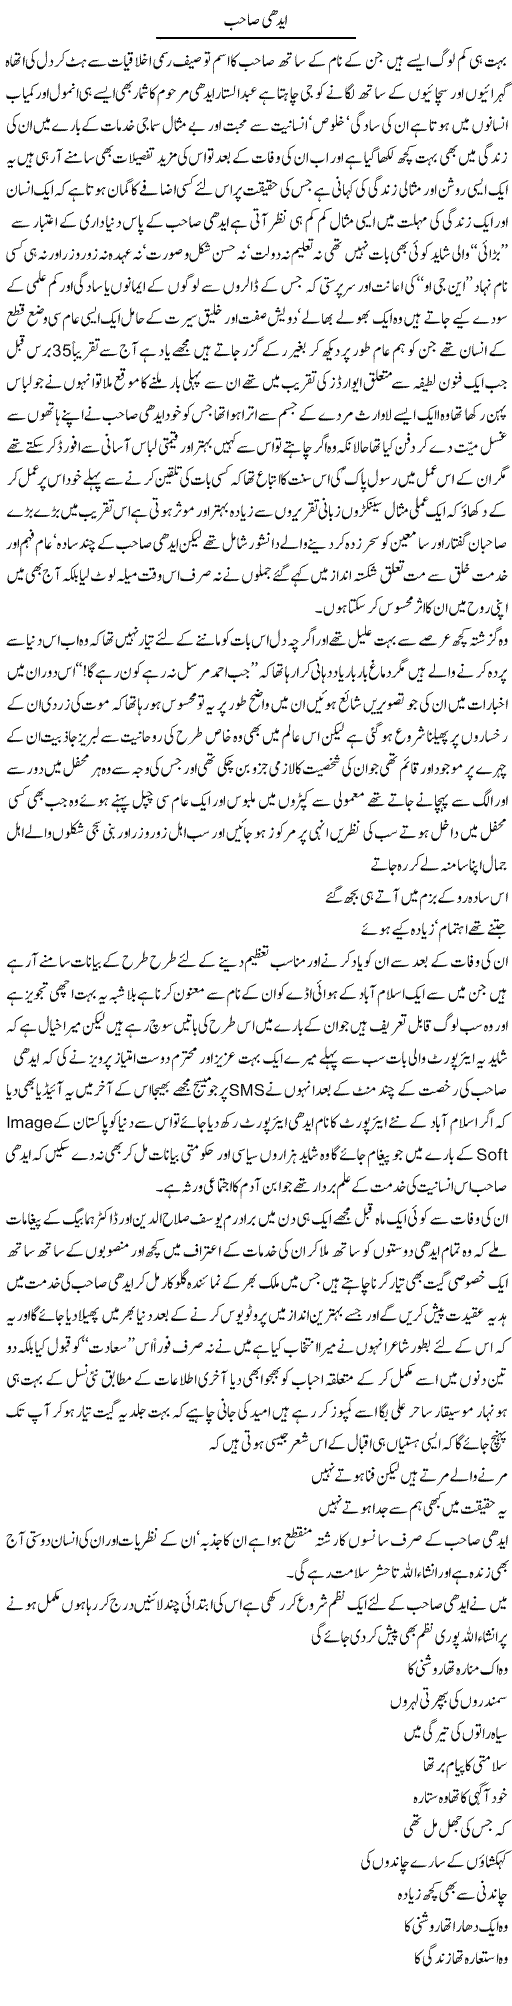 Edhi Sahib | Amjad Islam Amjad | Daily Urdu Columns